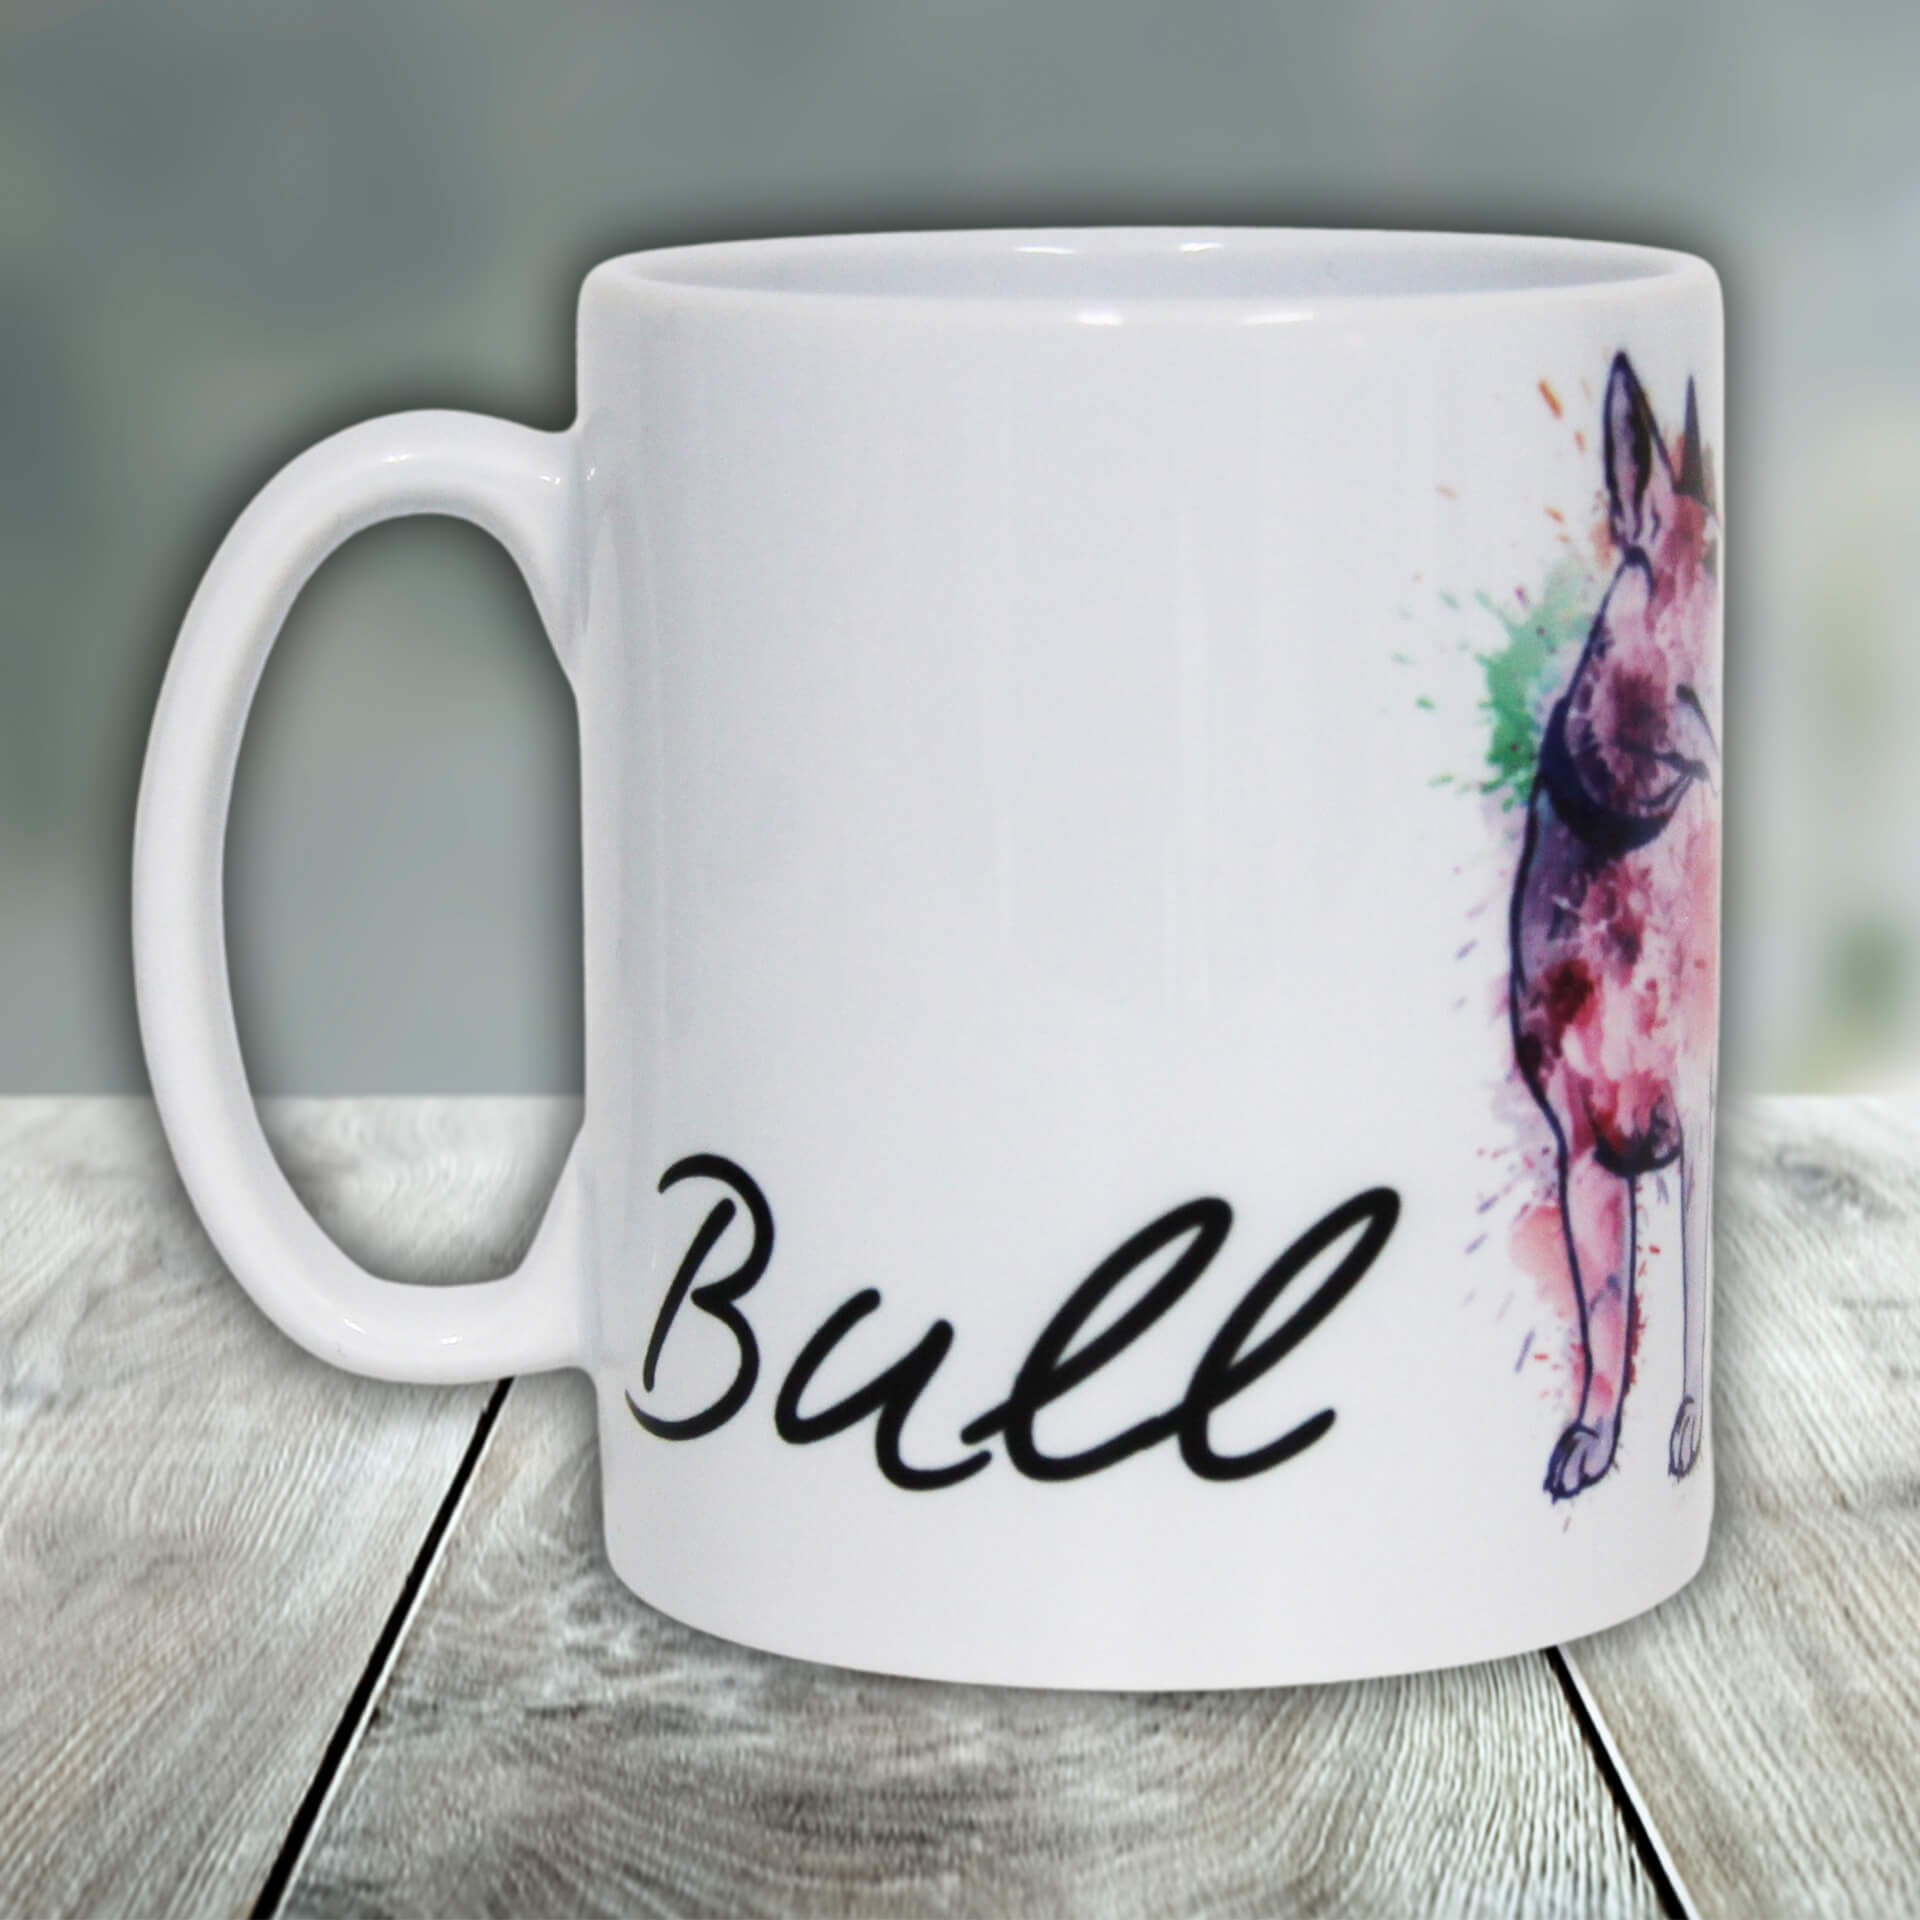 Bullterrier Tasse Colored links